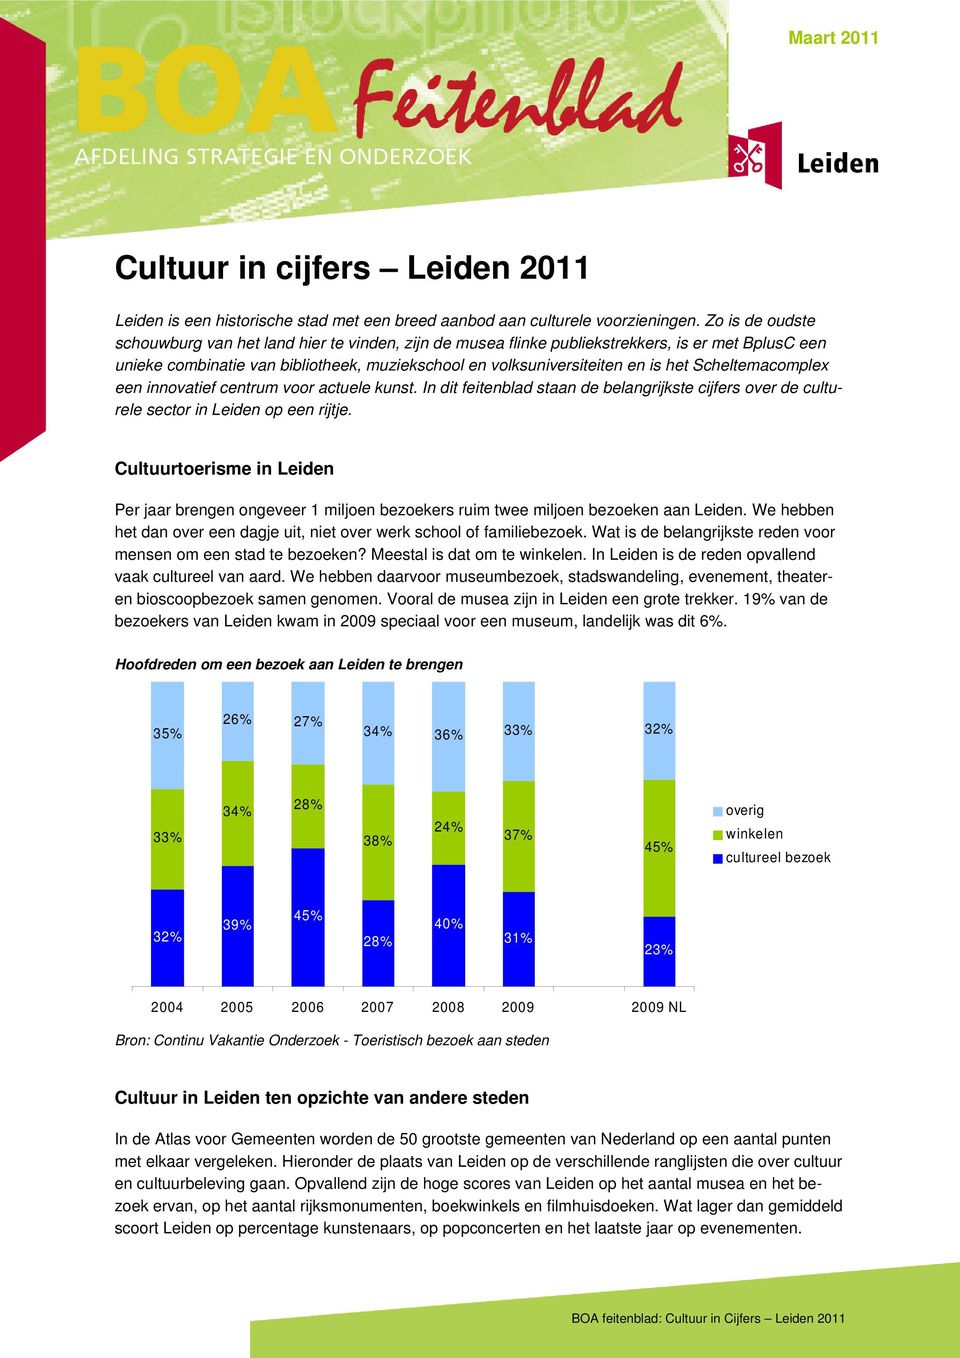 Scheltemacomplex een innovatief centrum voor actuele kunst. In dit feitenblad staan de belangrijkste cijfers over de culturele sector in Leiden op een rijtje.